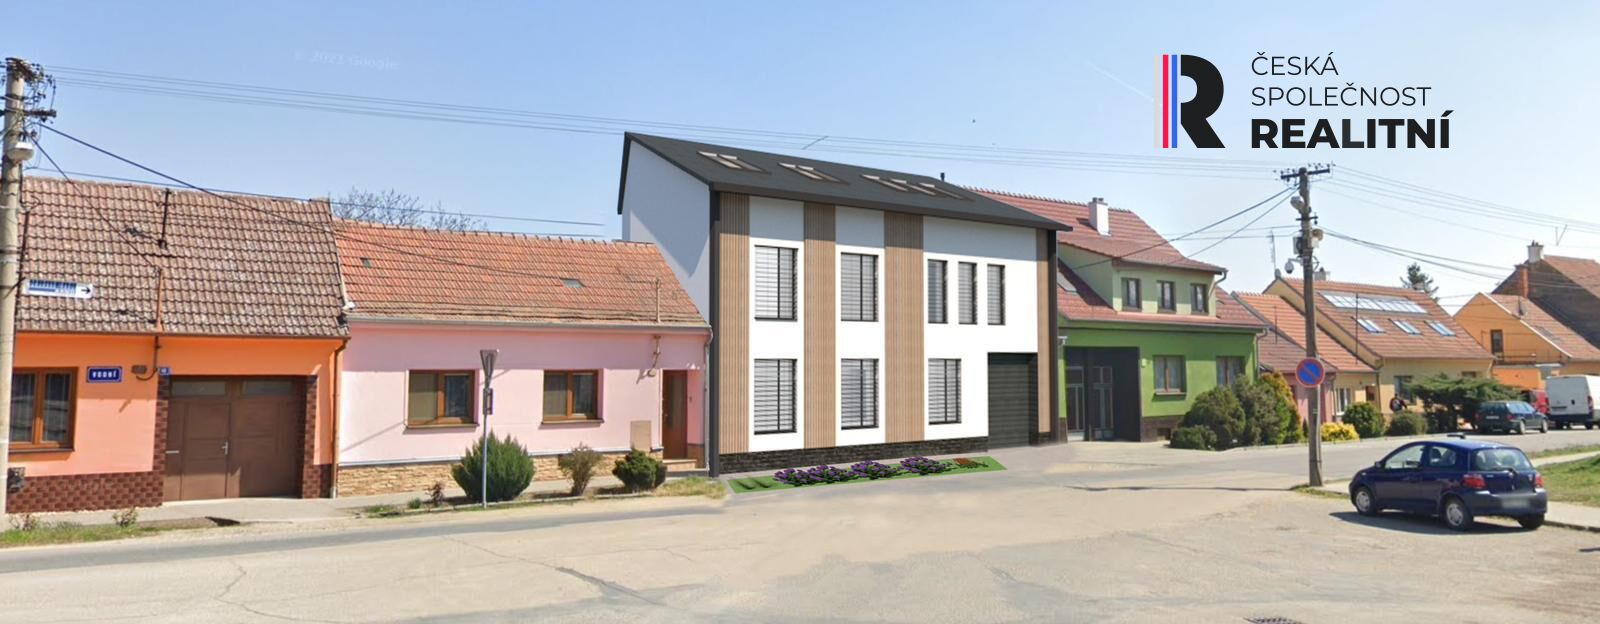 Prodej bytu 3+1 (až 5+1), mezonet 148m2 + terasa 11m2 -  ulice Vodní, Hrušovany u Brna